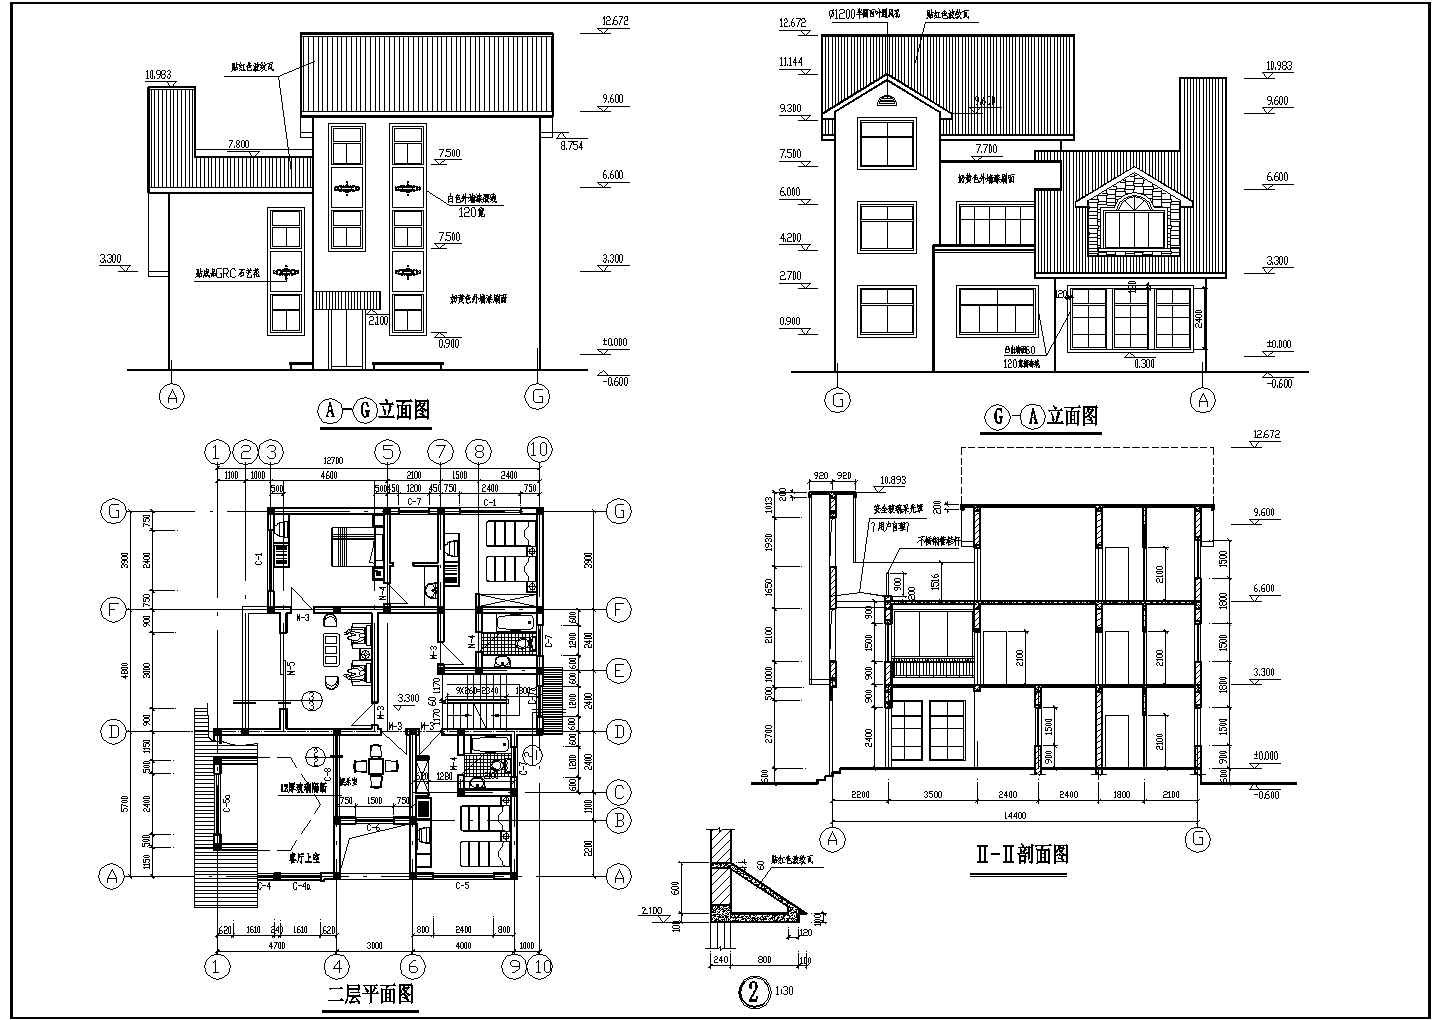 某别墅结构建筑设计方案CAD图纸(含配筋图、屋面结构图)